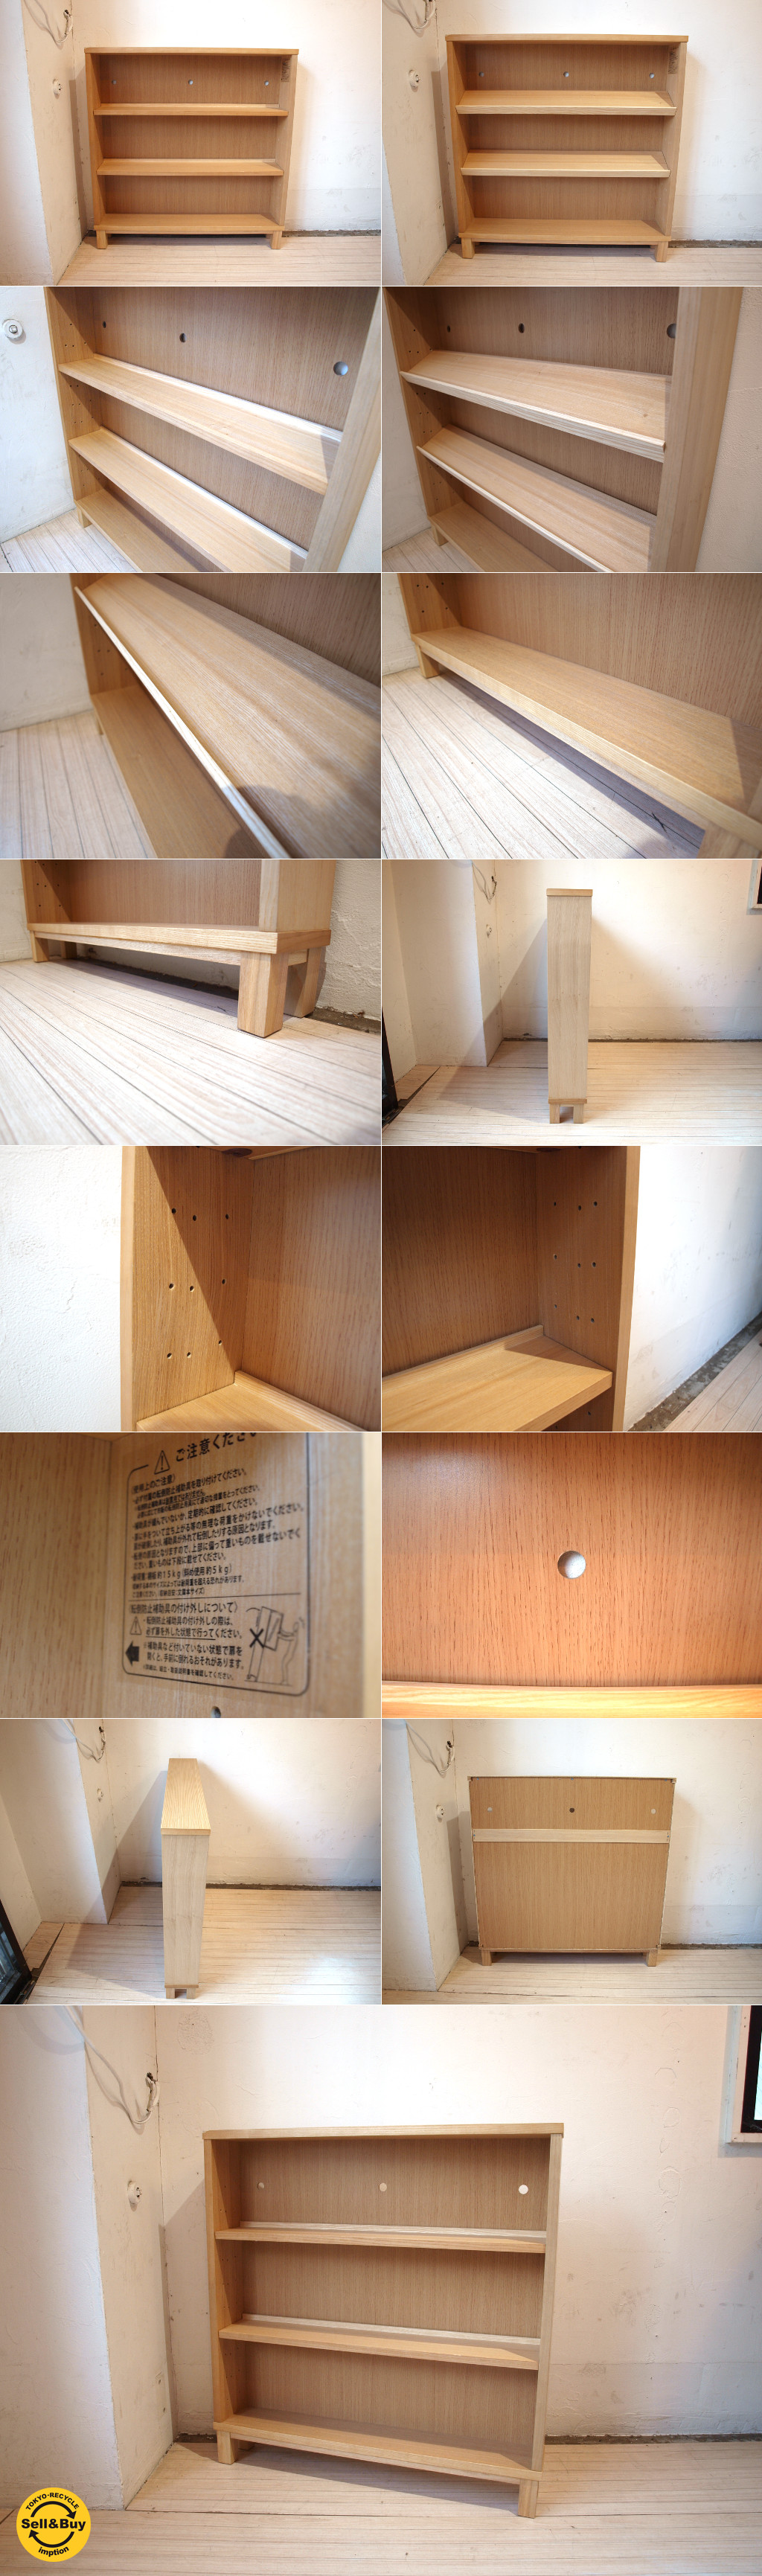 無印良品 MUJI 組み合わせて使える木製収納 タモ材 本棚 シェルフ ロー 